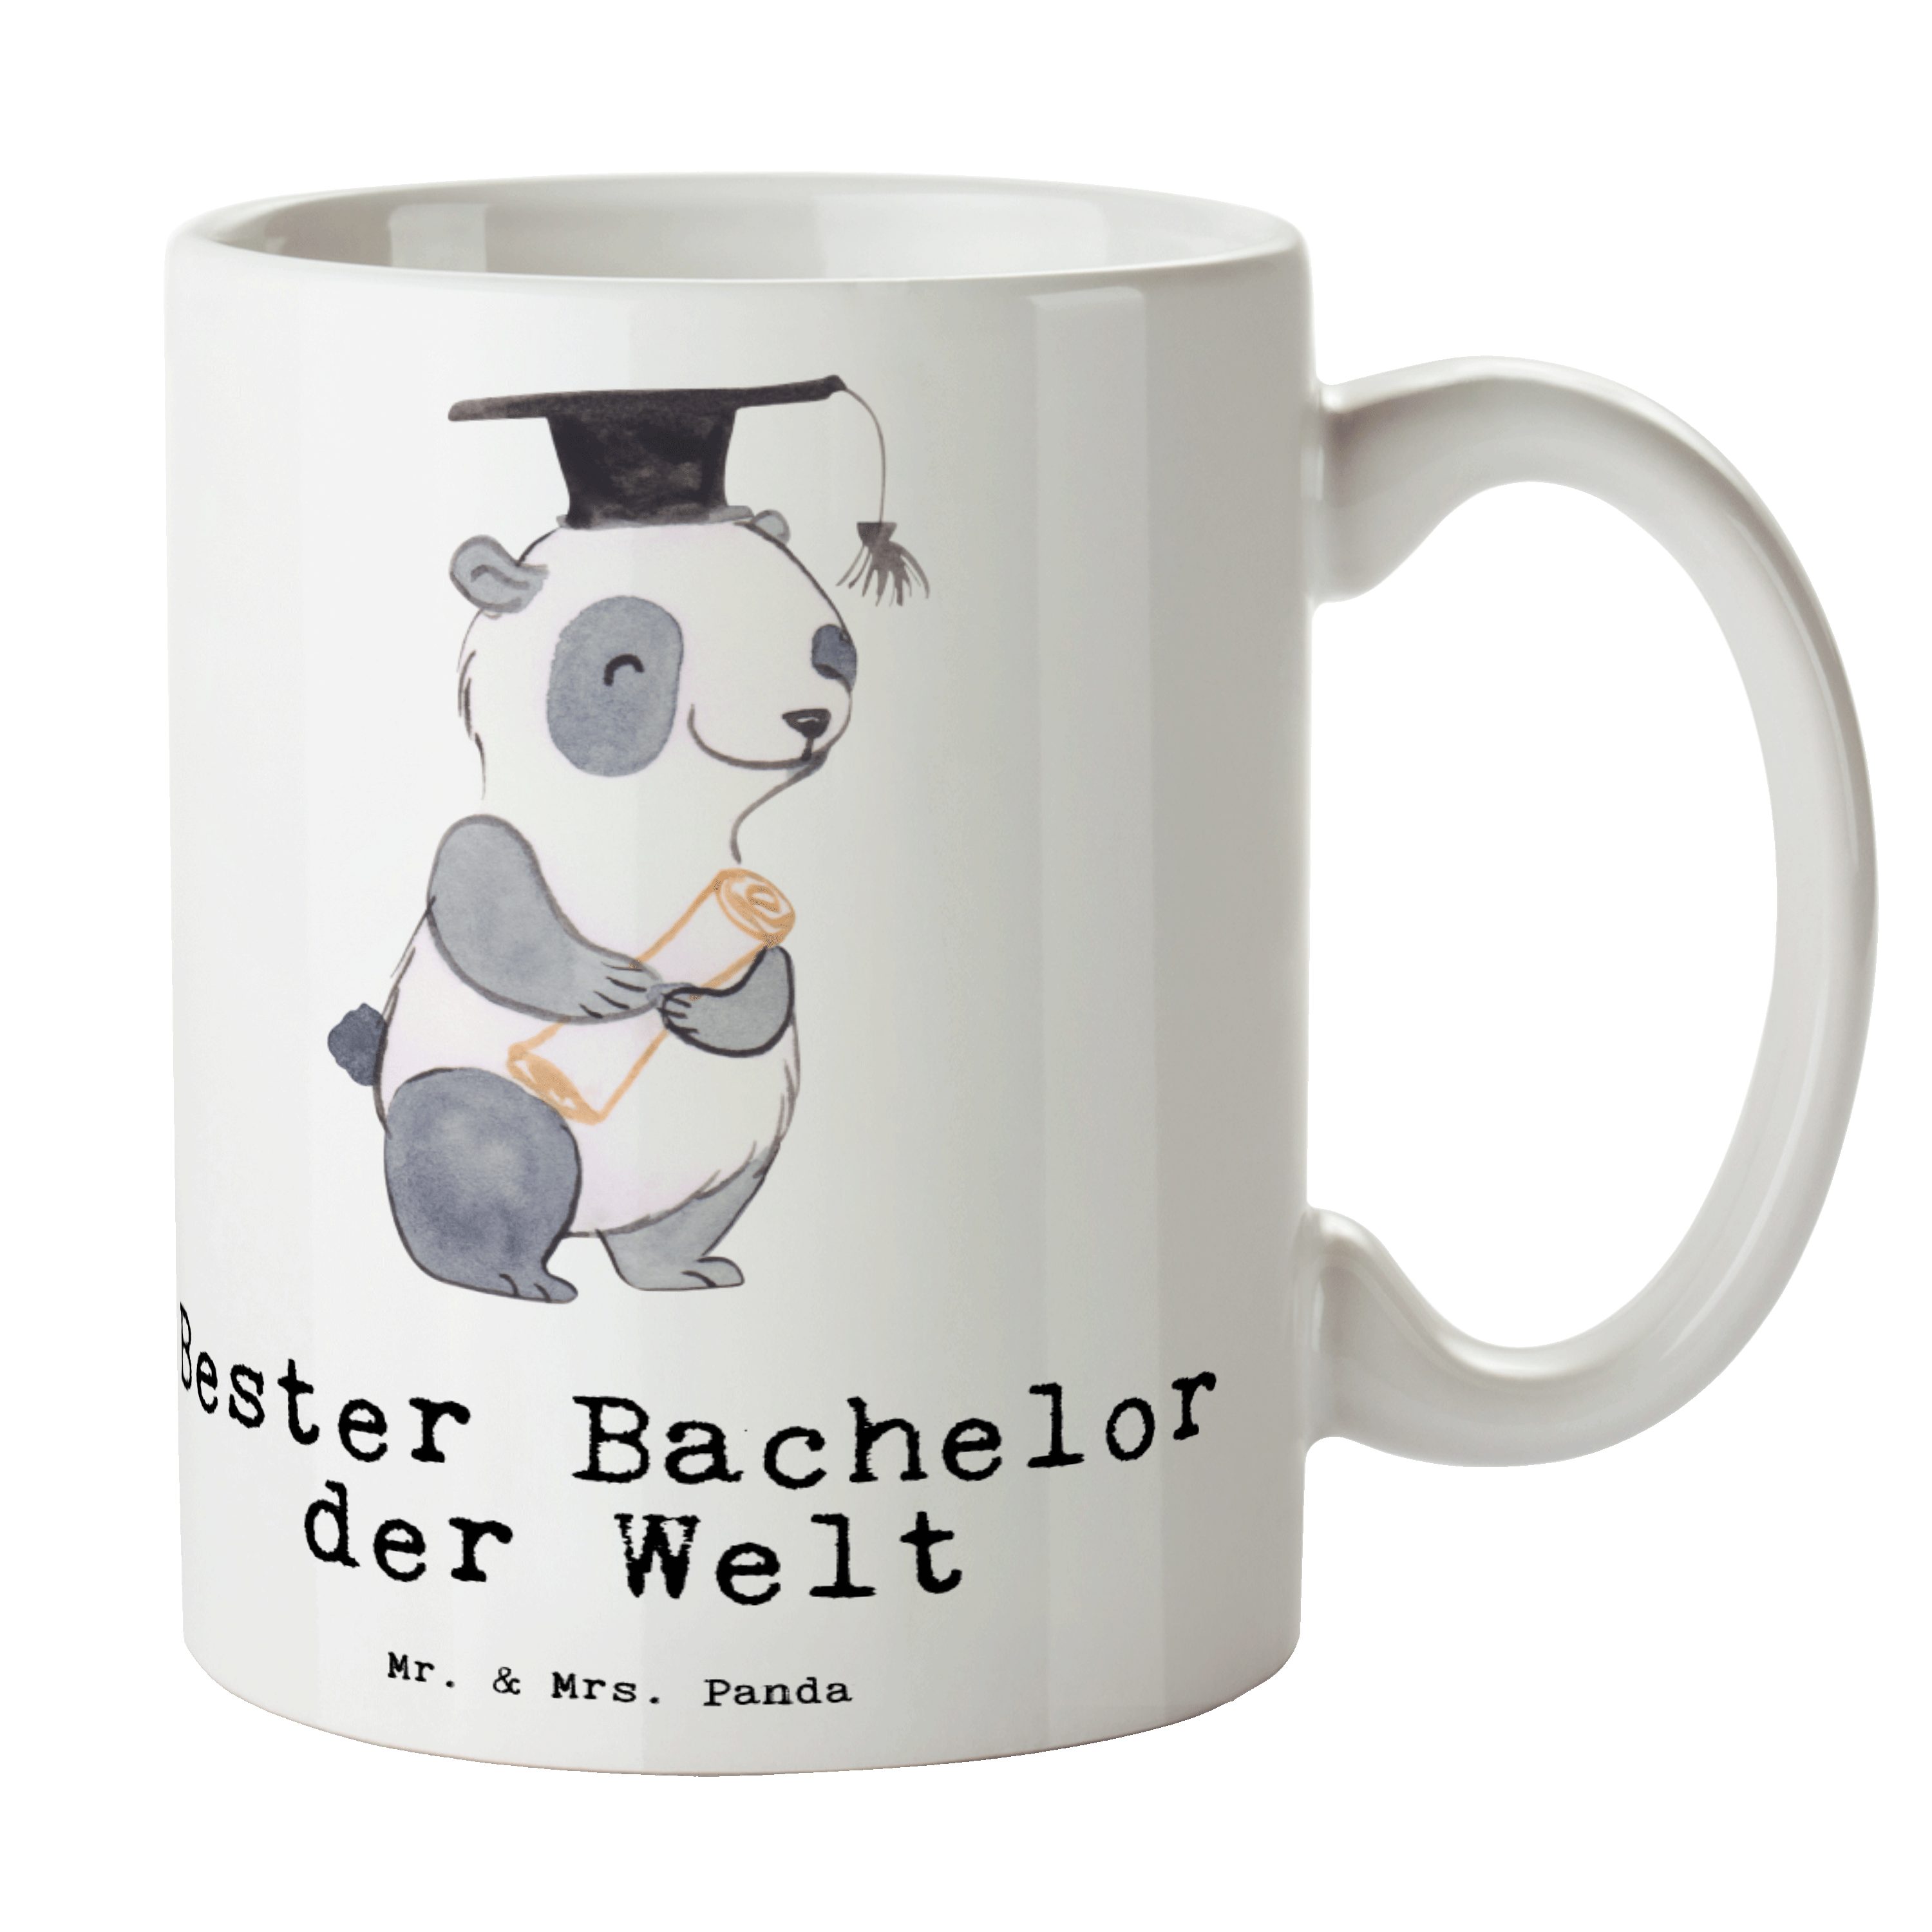 Mr. & Mrs. Panda Tasse Panda Bester Bachelor der Welt - Weiß - Geschenk, Freude machen, Becher, Student, lustig, Kaffeetasse, Büro, Geschenktipp, Studienabschluss, Alumni, Keramik